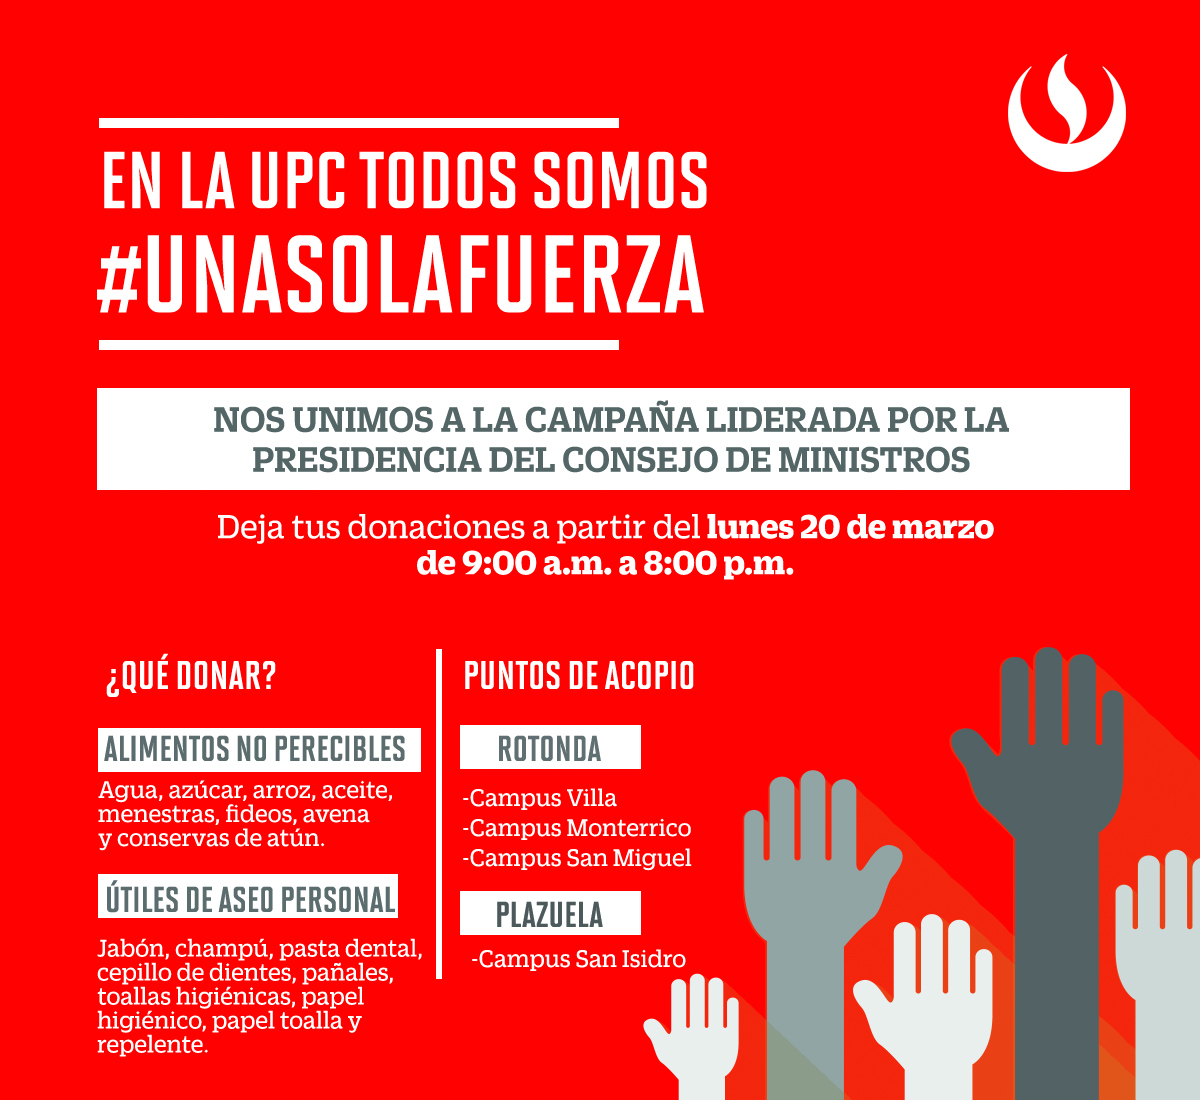 En la UPC todos somos #UnaSolaFuerza